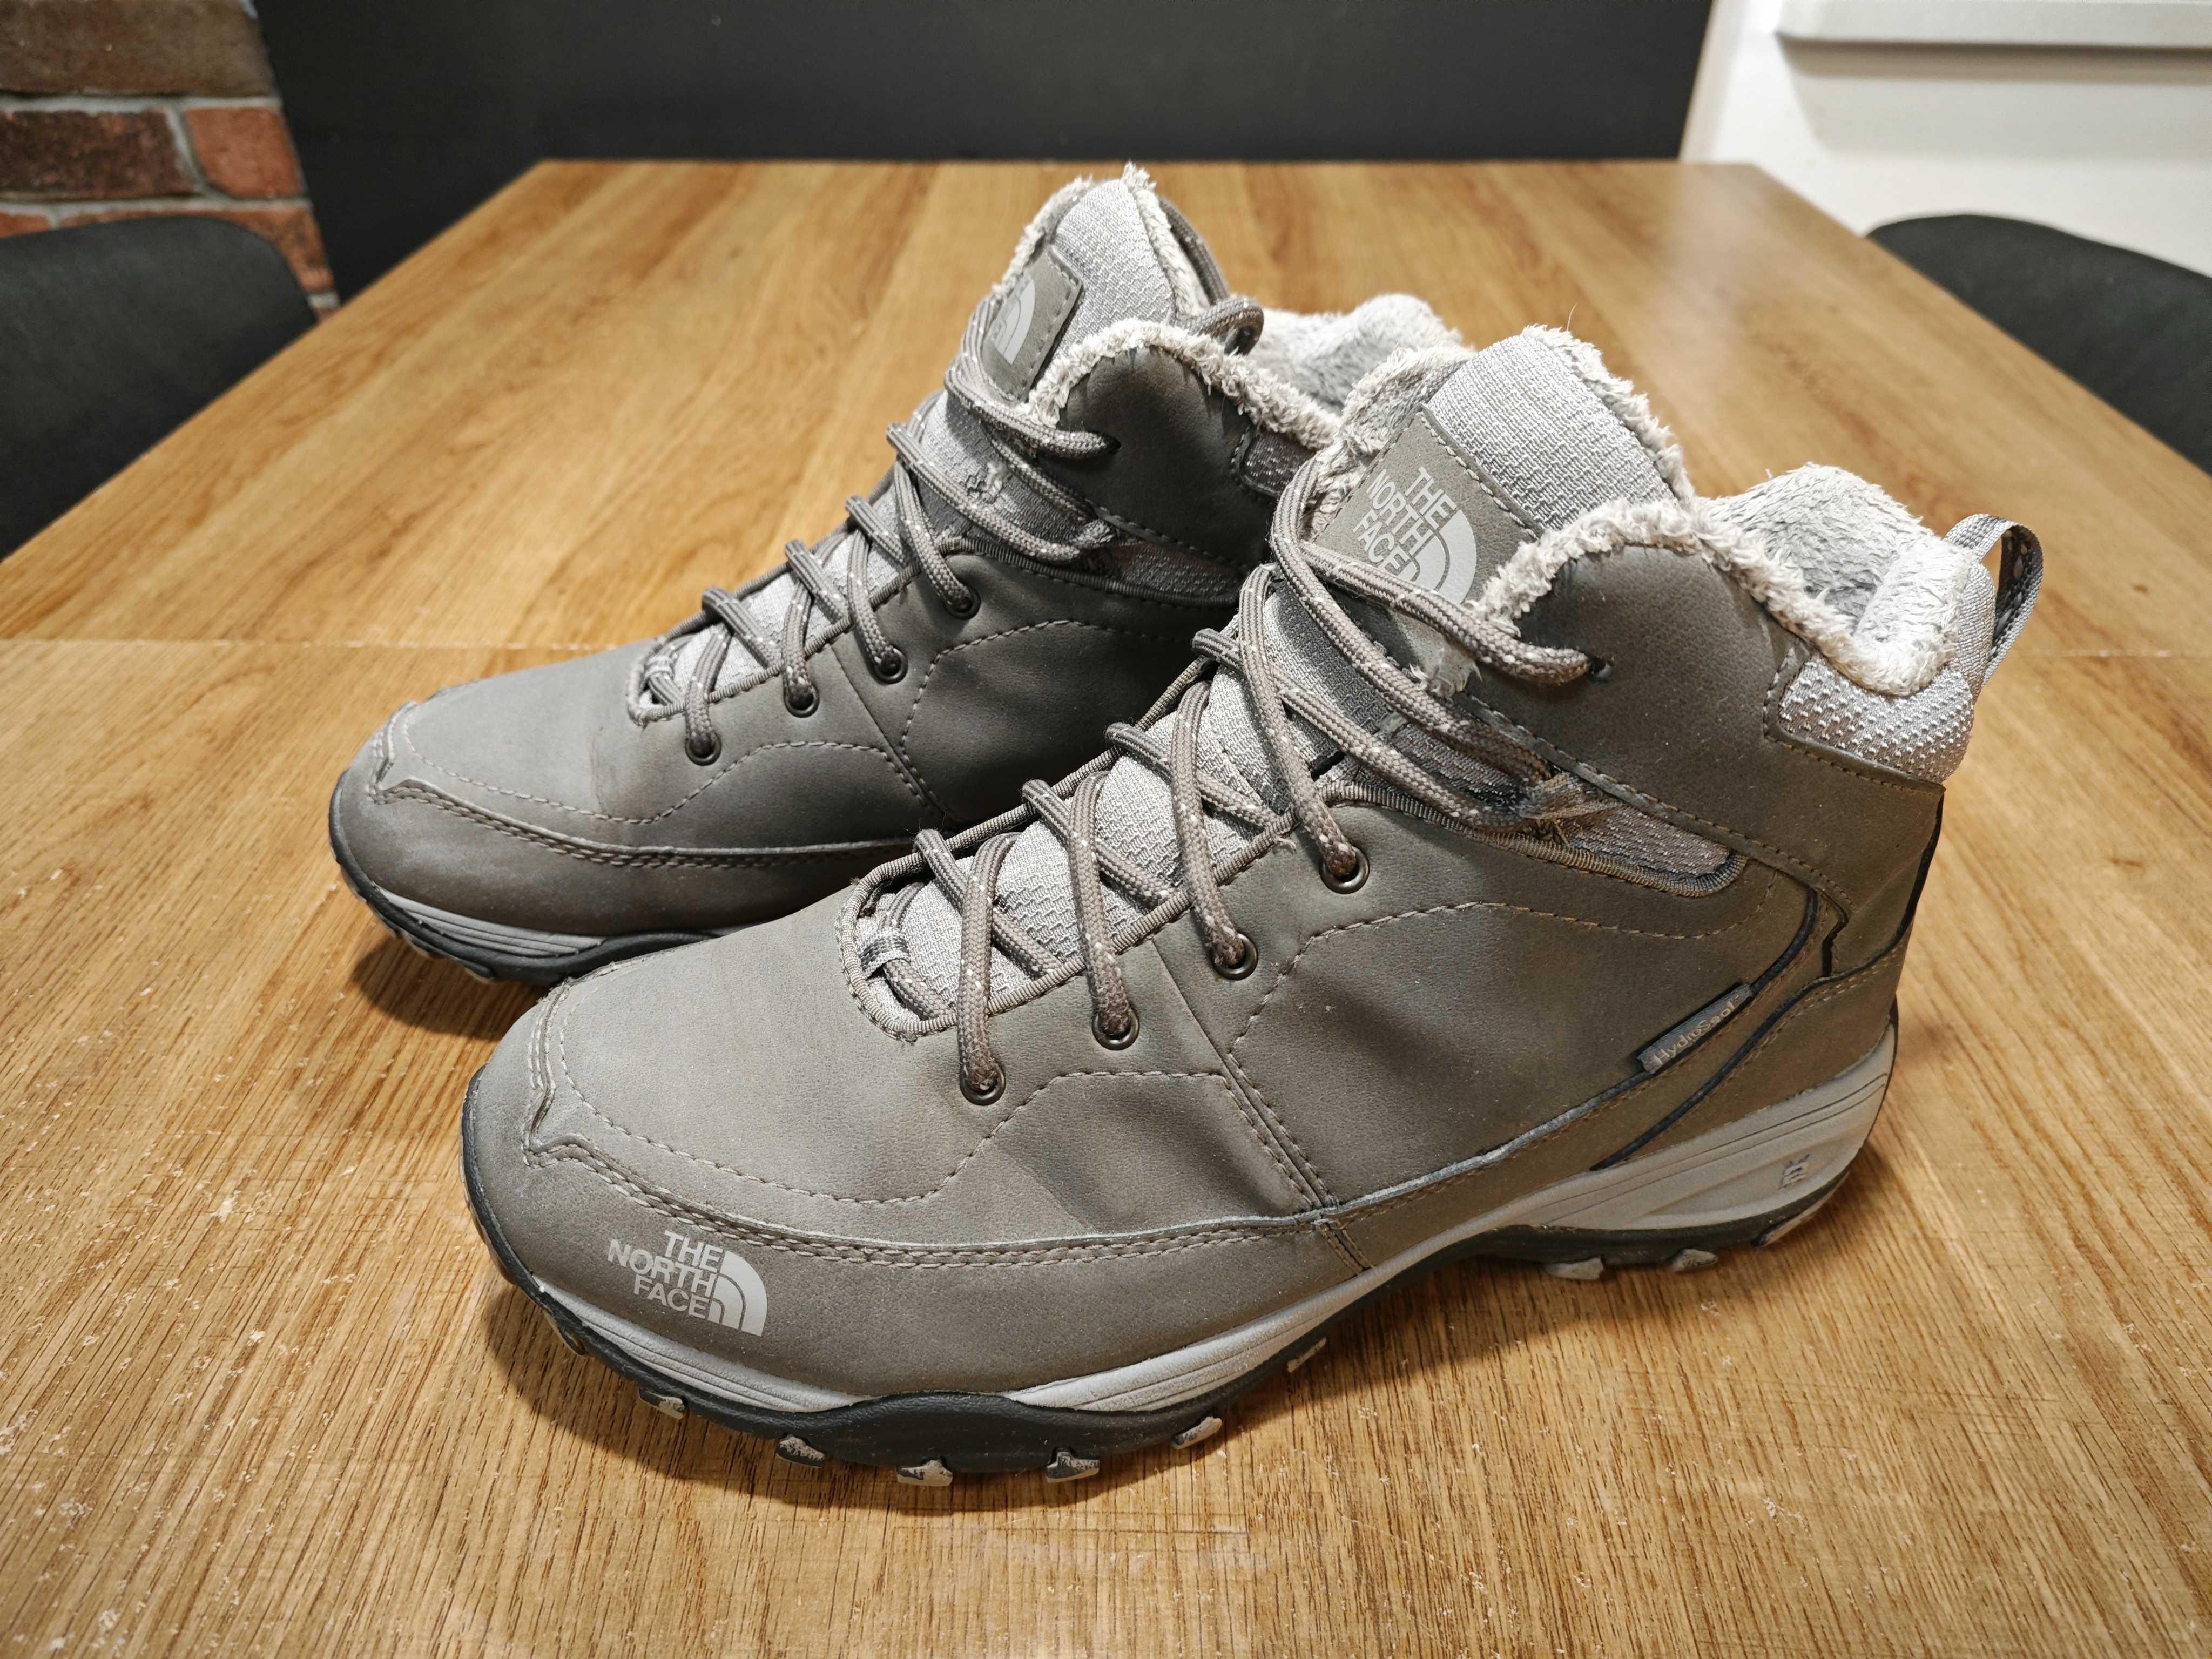 Zimowe buty damskie THE NORTH FACE Snowstrike II, dł. wkładki 26,5 cm